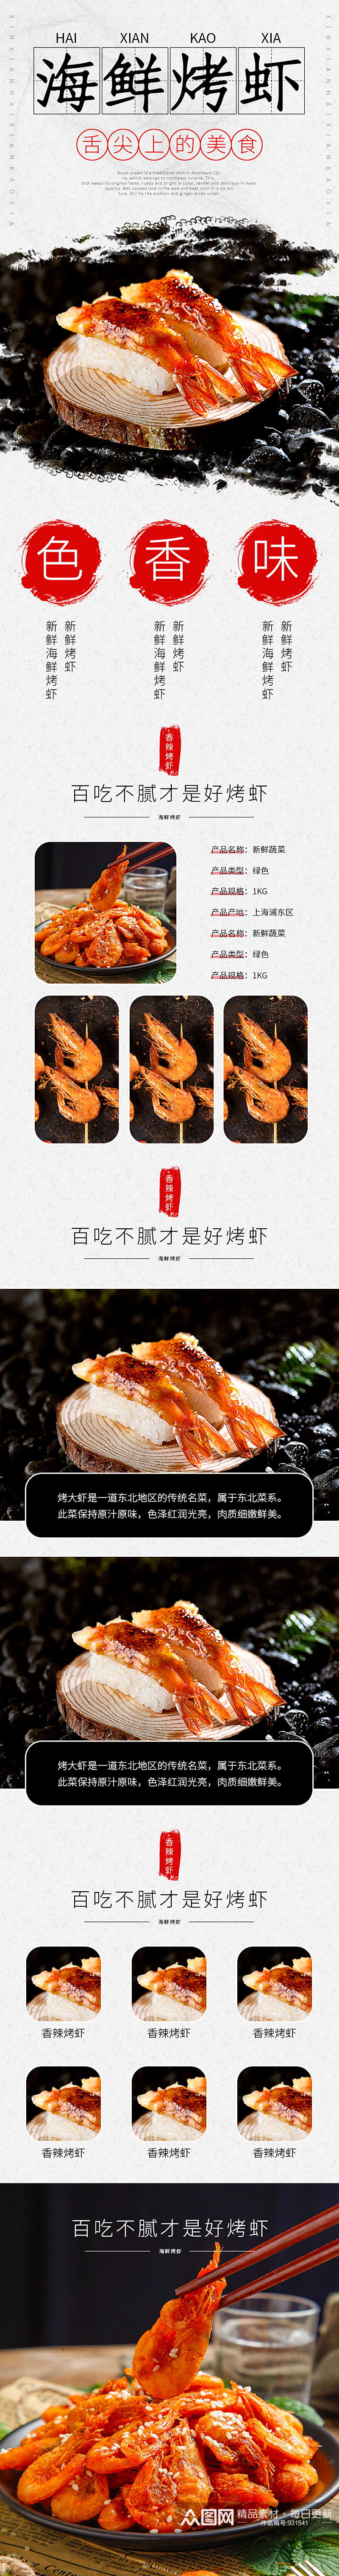 食品海鲜烤虾干鱼大虾螃蟹肉详情页模板素材